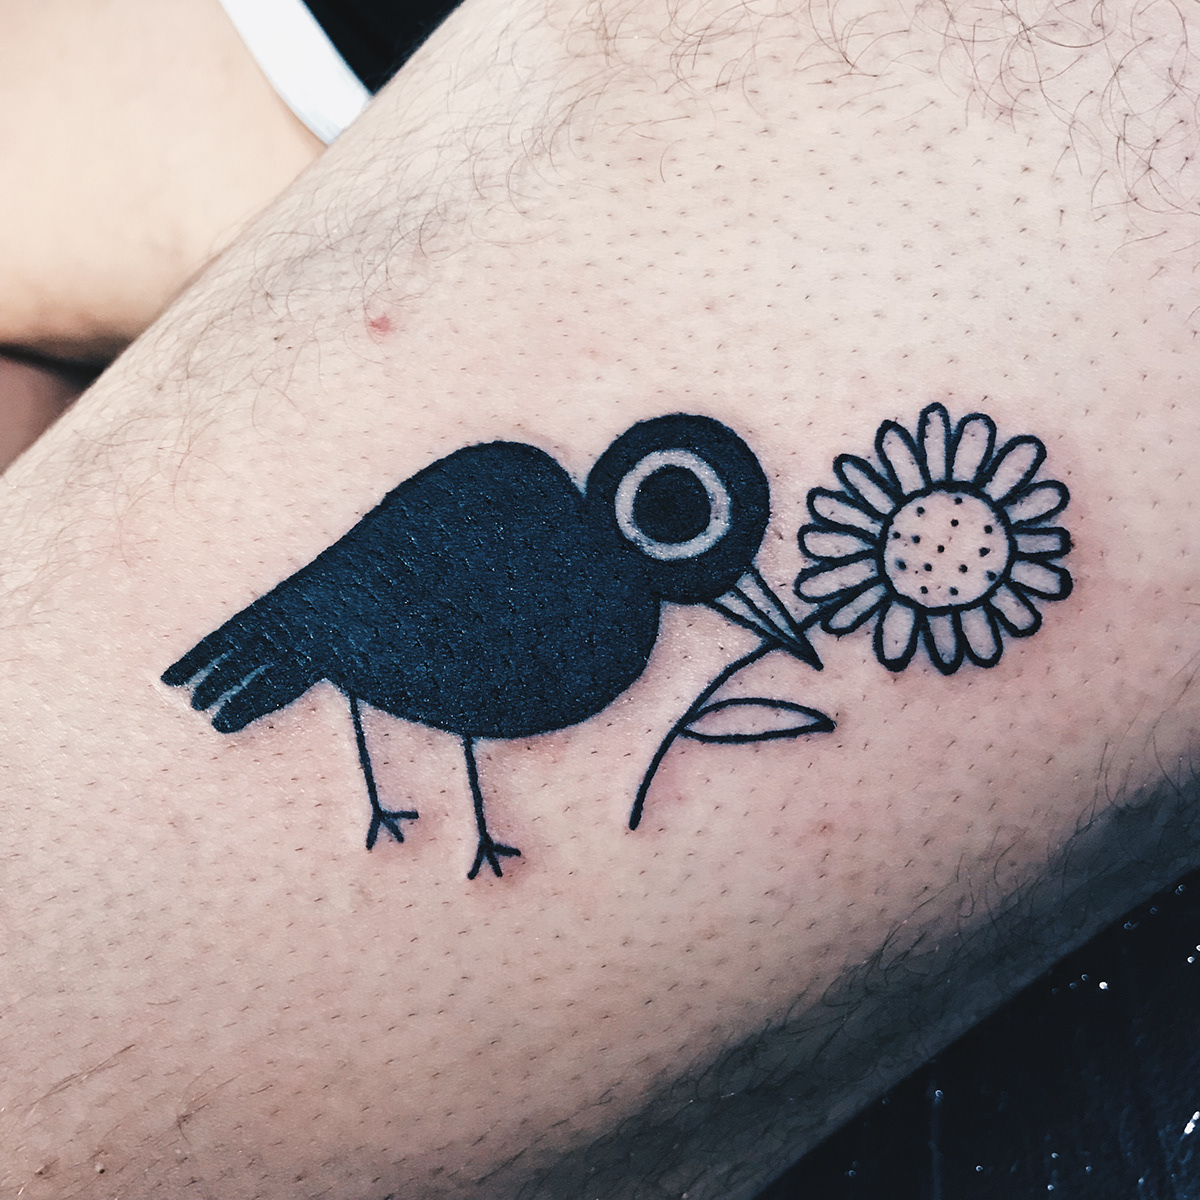 El Salvador tattoo floral bird queer